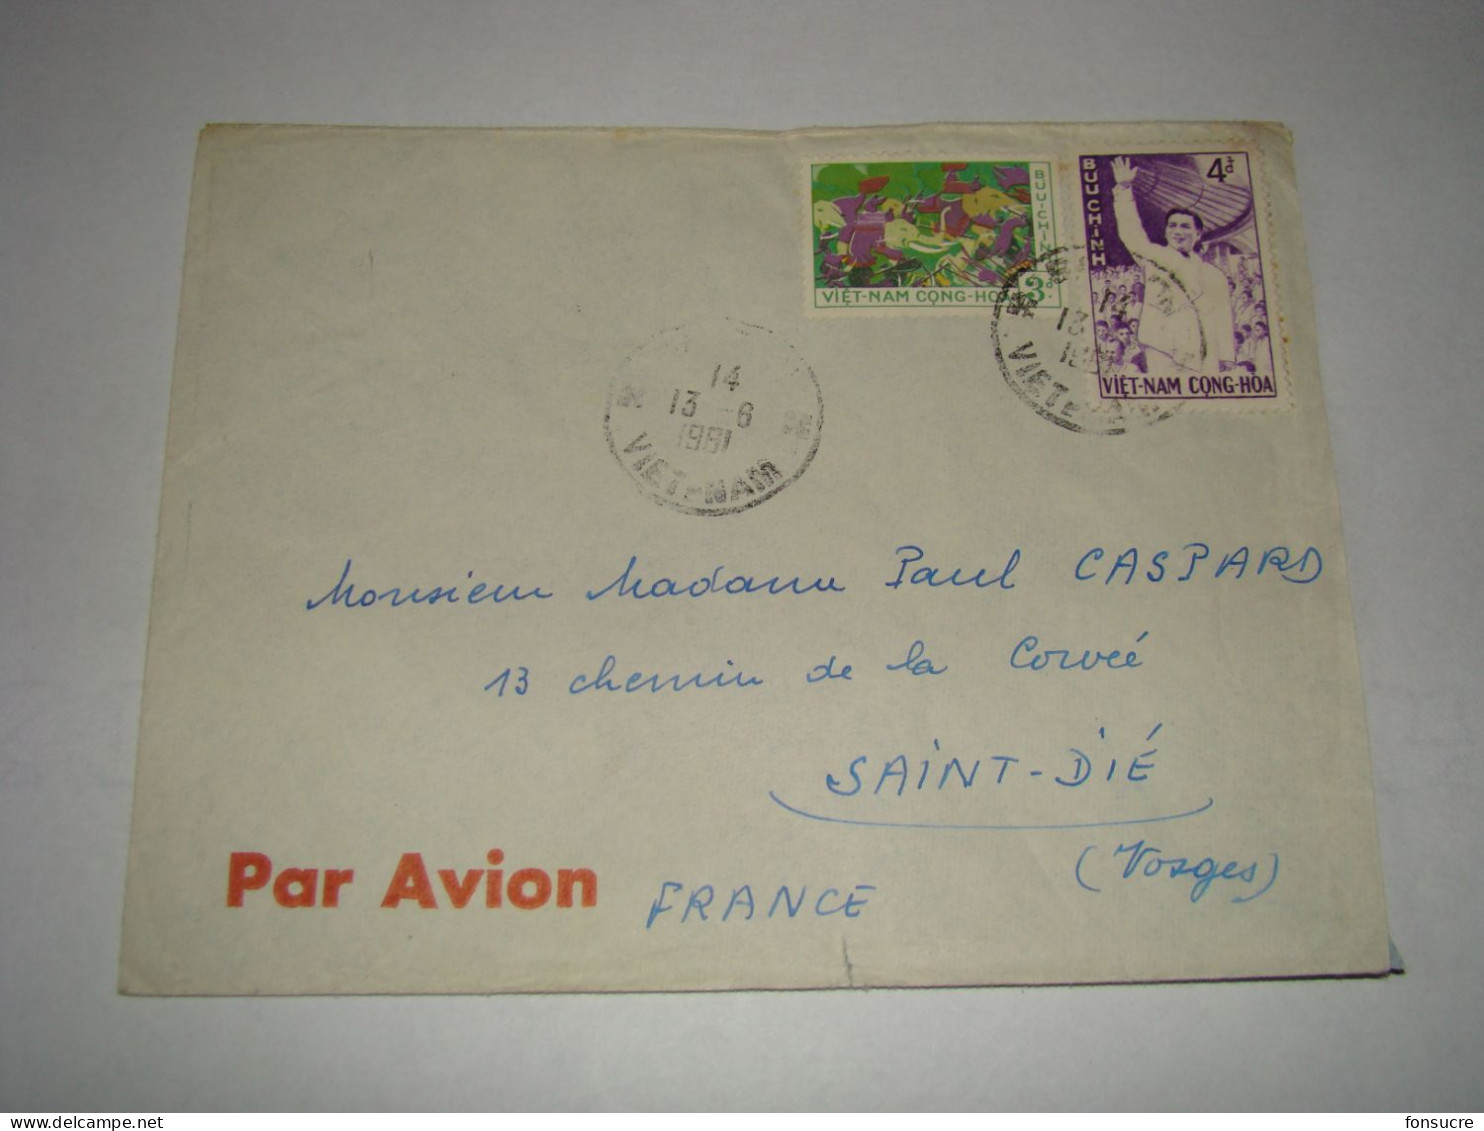 4333 Lettre Par Avion Air Mail Saïgon Viêt-Nam Cong-Hoa Buu-Ching Pour St Dié Vosges France 13/06/1961 - Vietnam